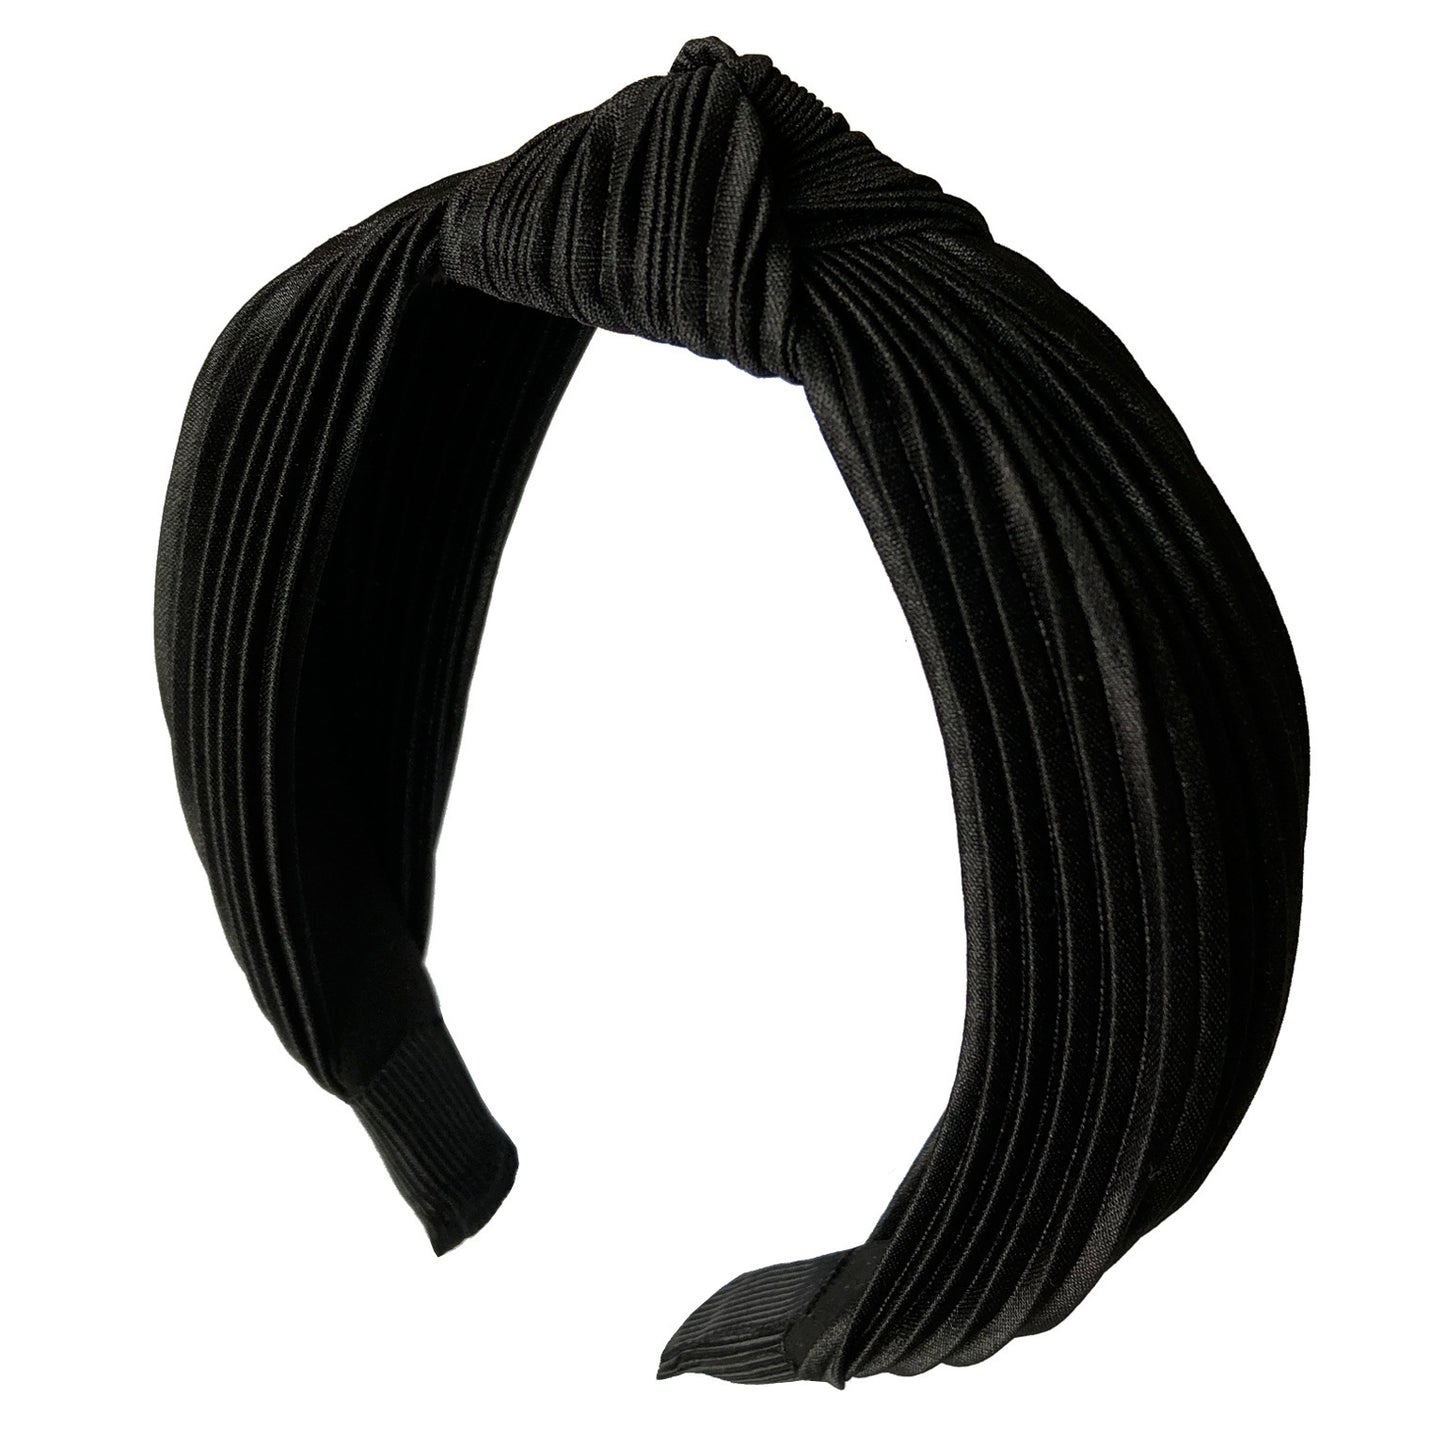 Pleated knotted headband